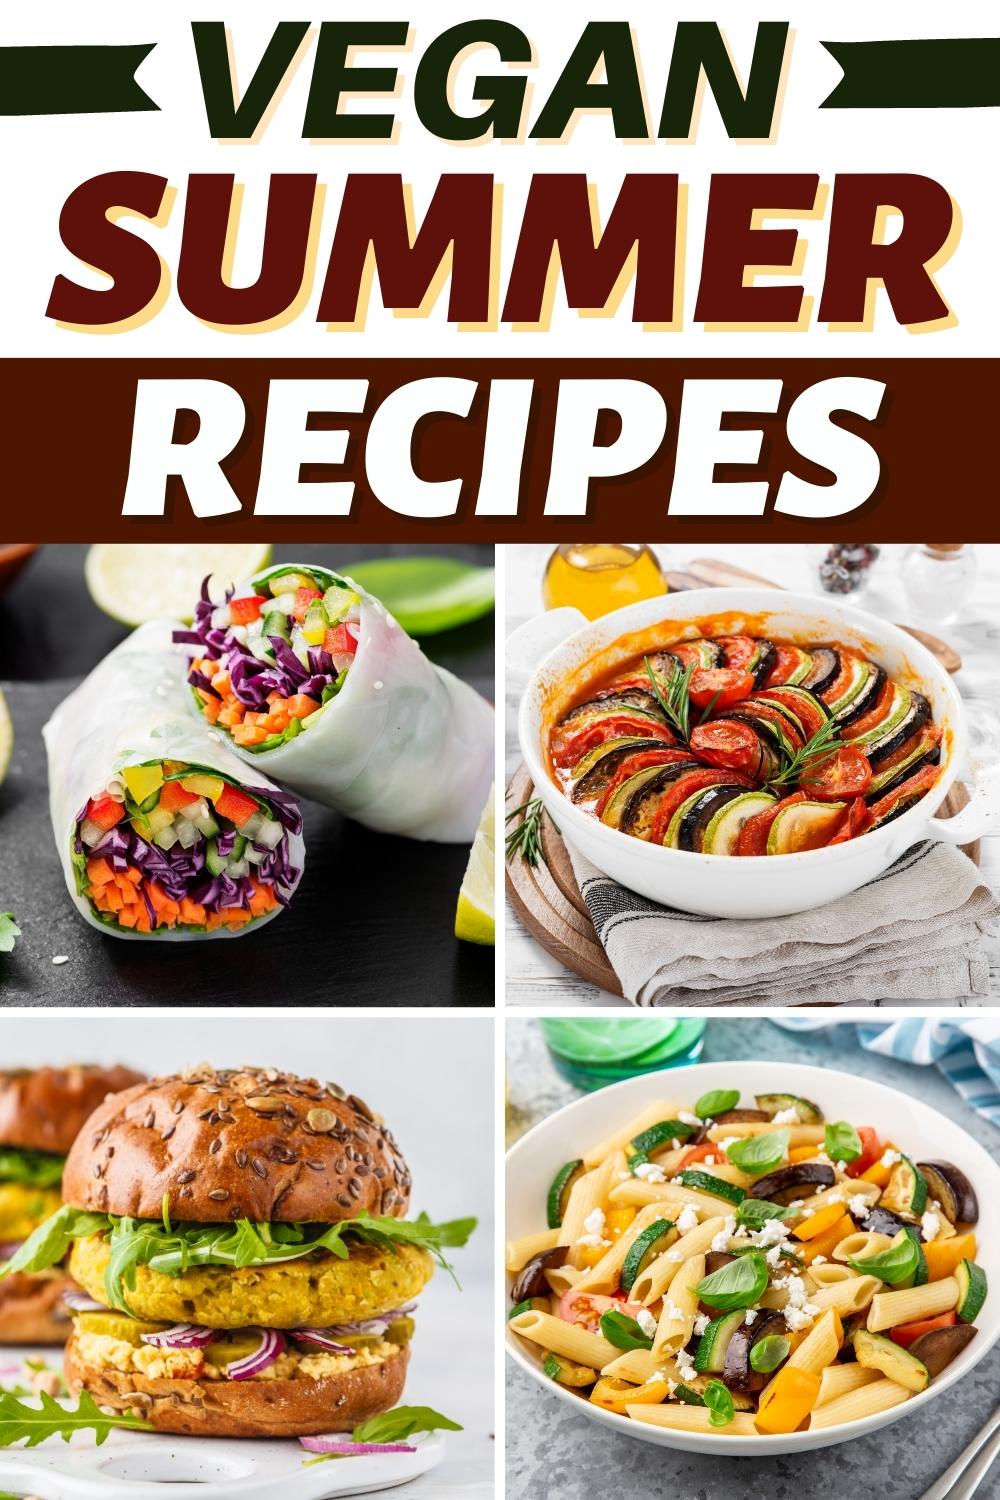 30 Light Vegan Summer Recipes for Dinner - Insanely Good